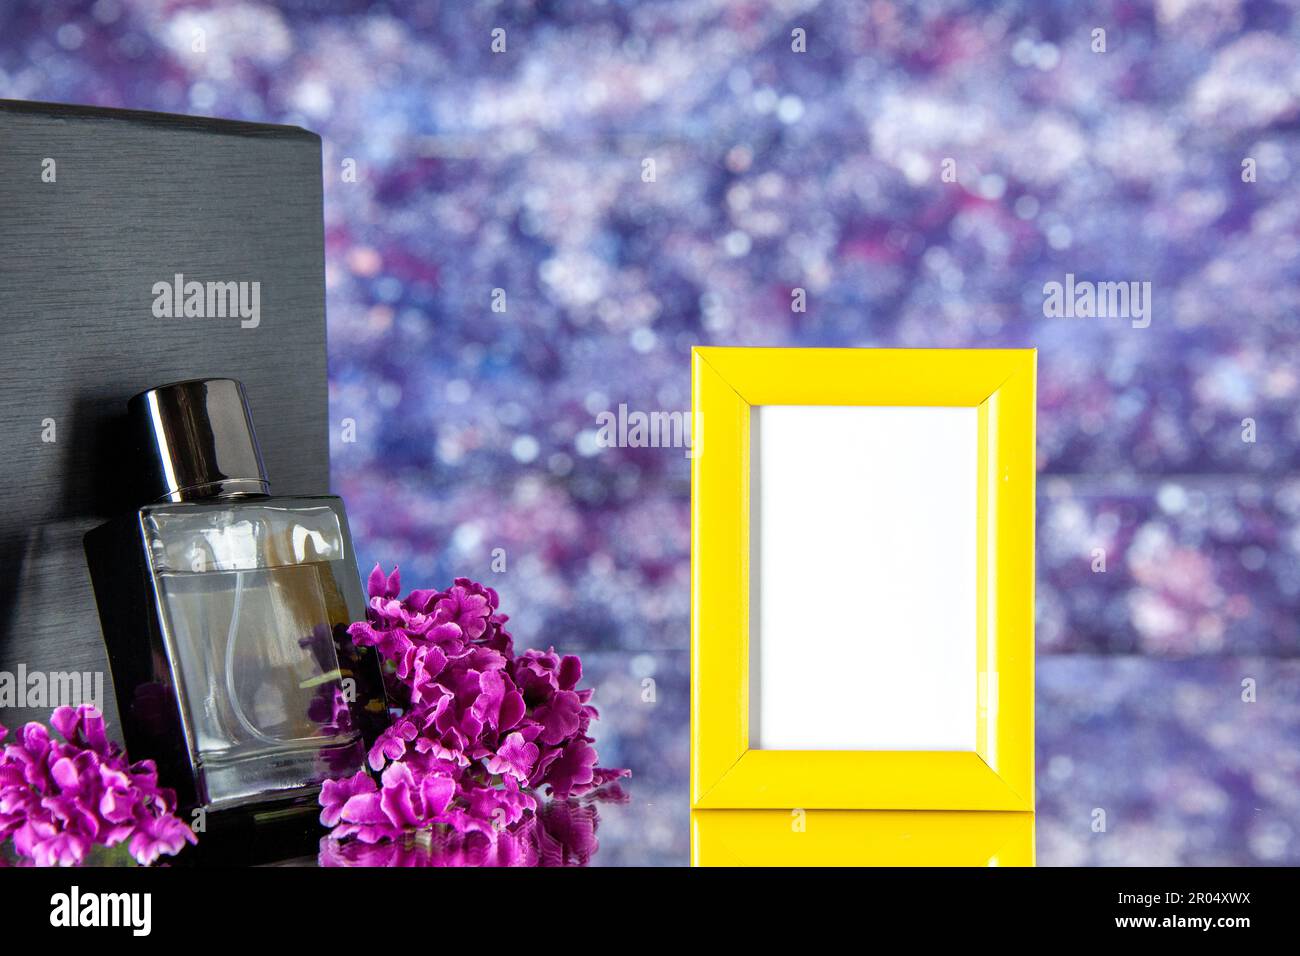 Vorderansicht schwarzer Duft mit gelbem Bilderrahmen auf hellem Hintergrund  Porträt Duft Geschenk Liebe Parfüm Farbe Geschenk Blume Stockfotografie -  Alamy